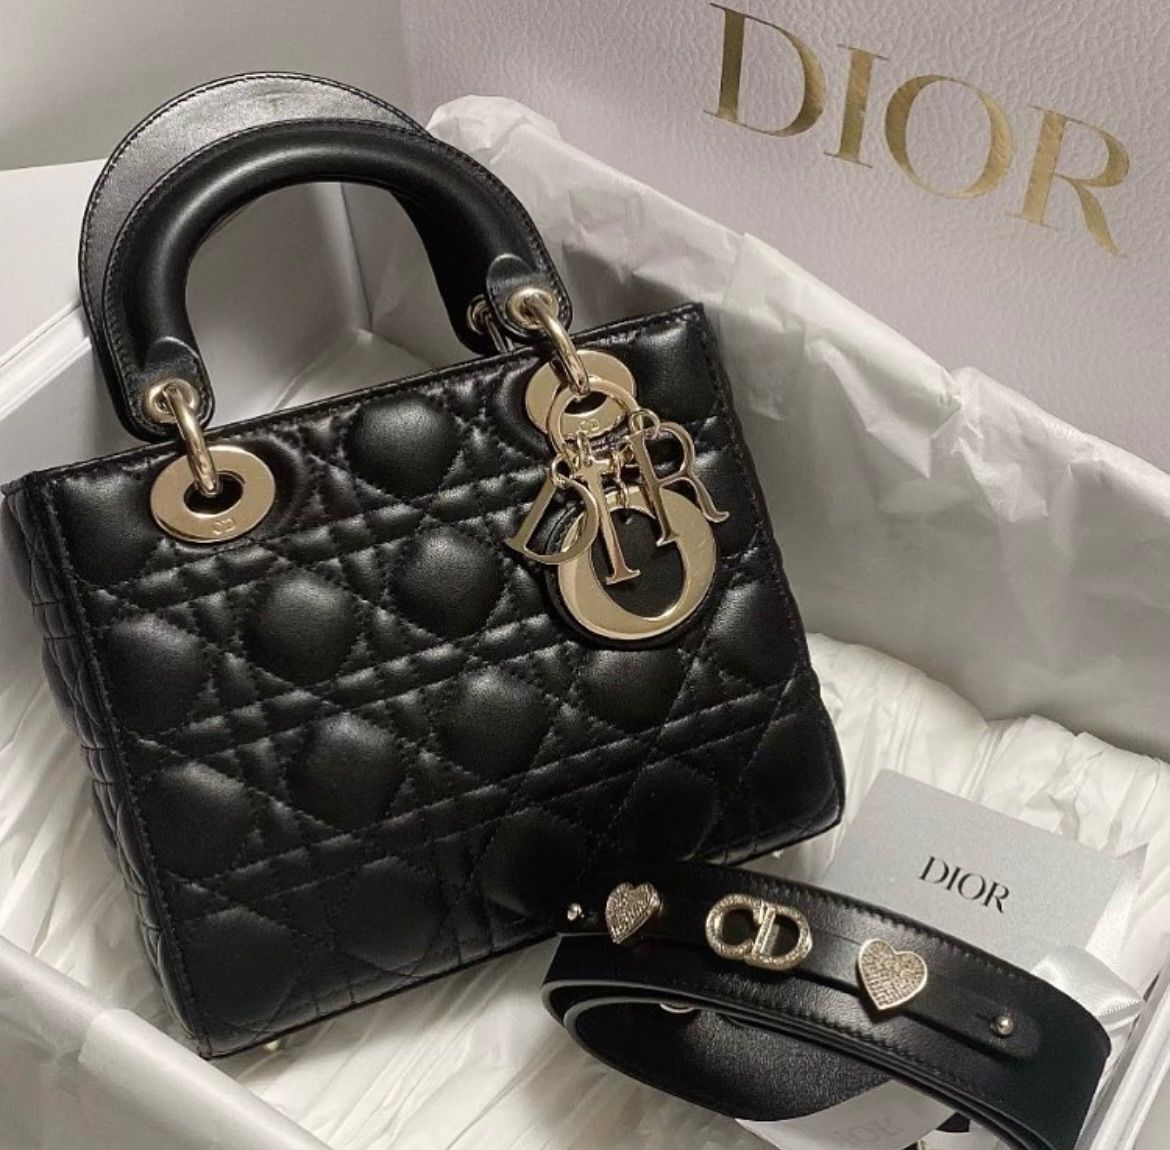 ホワイト新品 Christian Dior レディディオール スモールバッグ